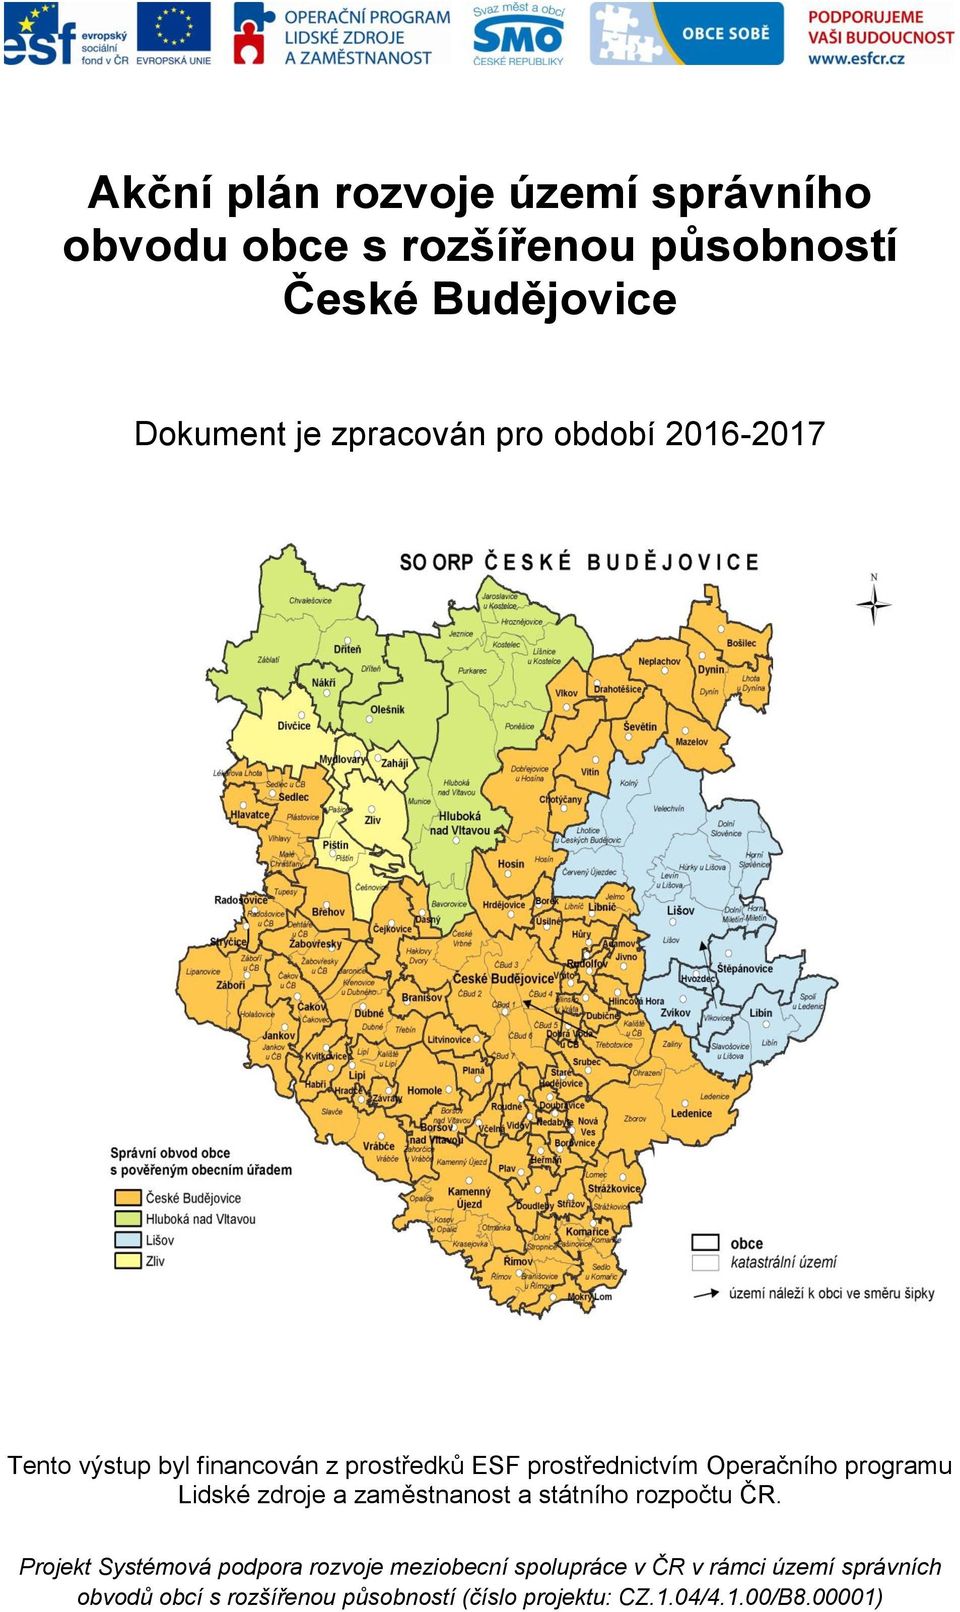 programu Lidské zdroje a zaměstnanost a státního rozpočtu ČR.